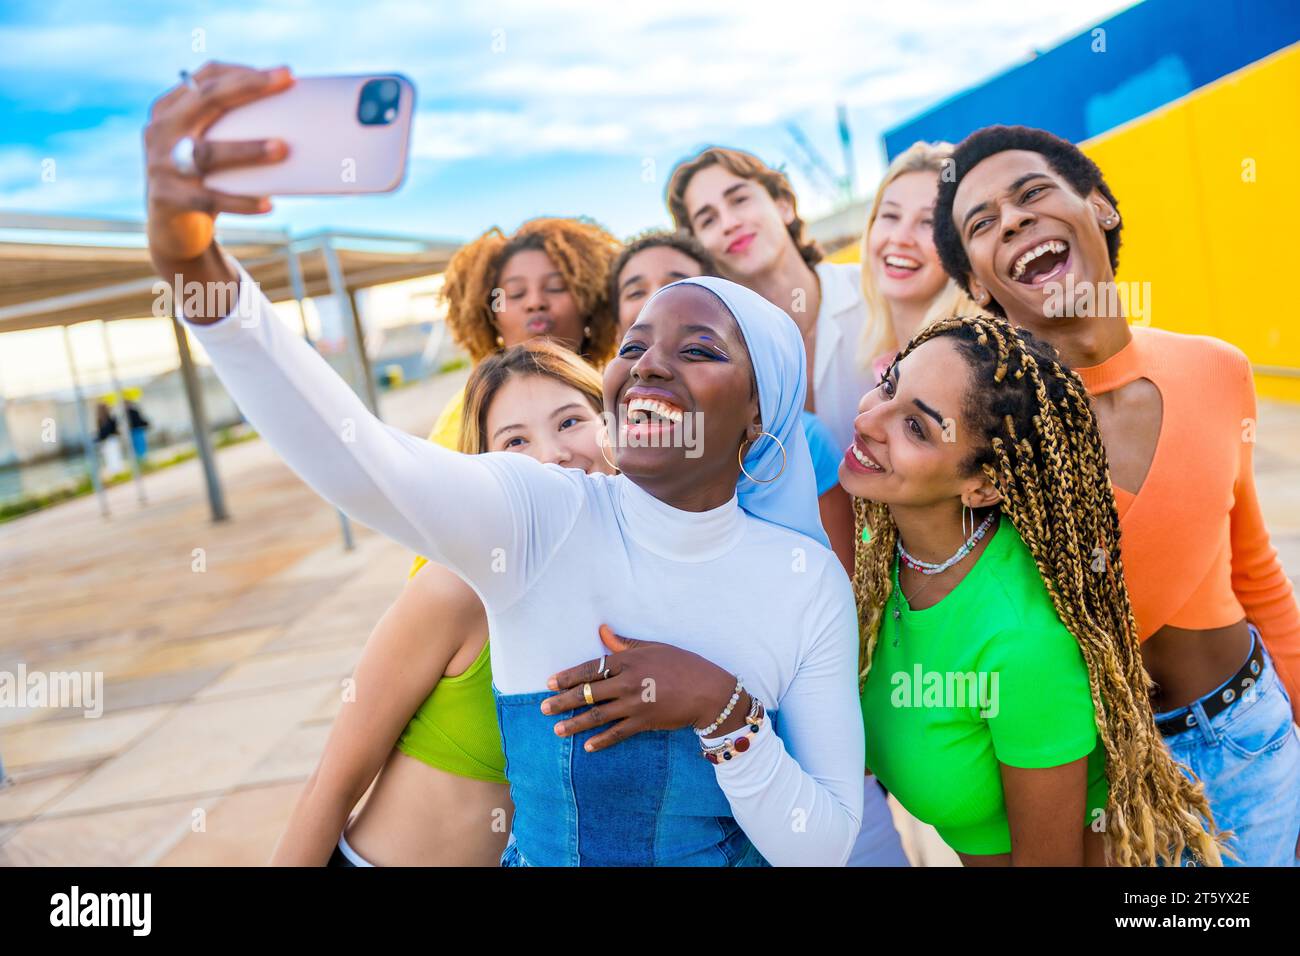 Glückliche muslimische afrikanerin, die ein Selfie macht, während sie mit Freunden lacht Stockfoto